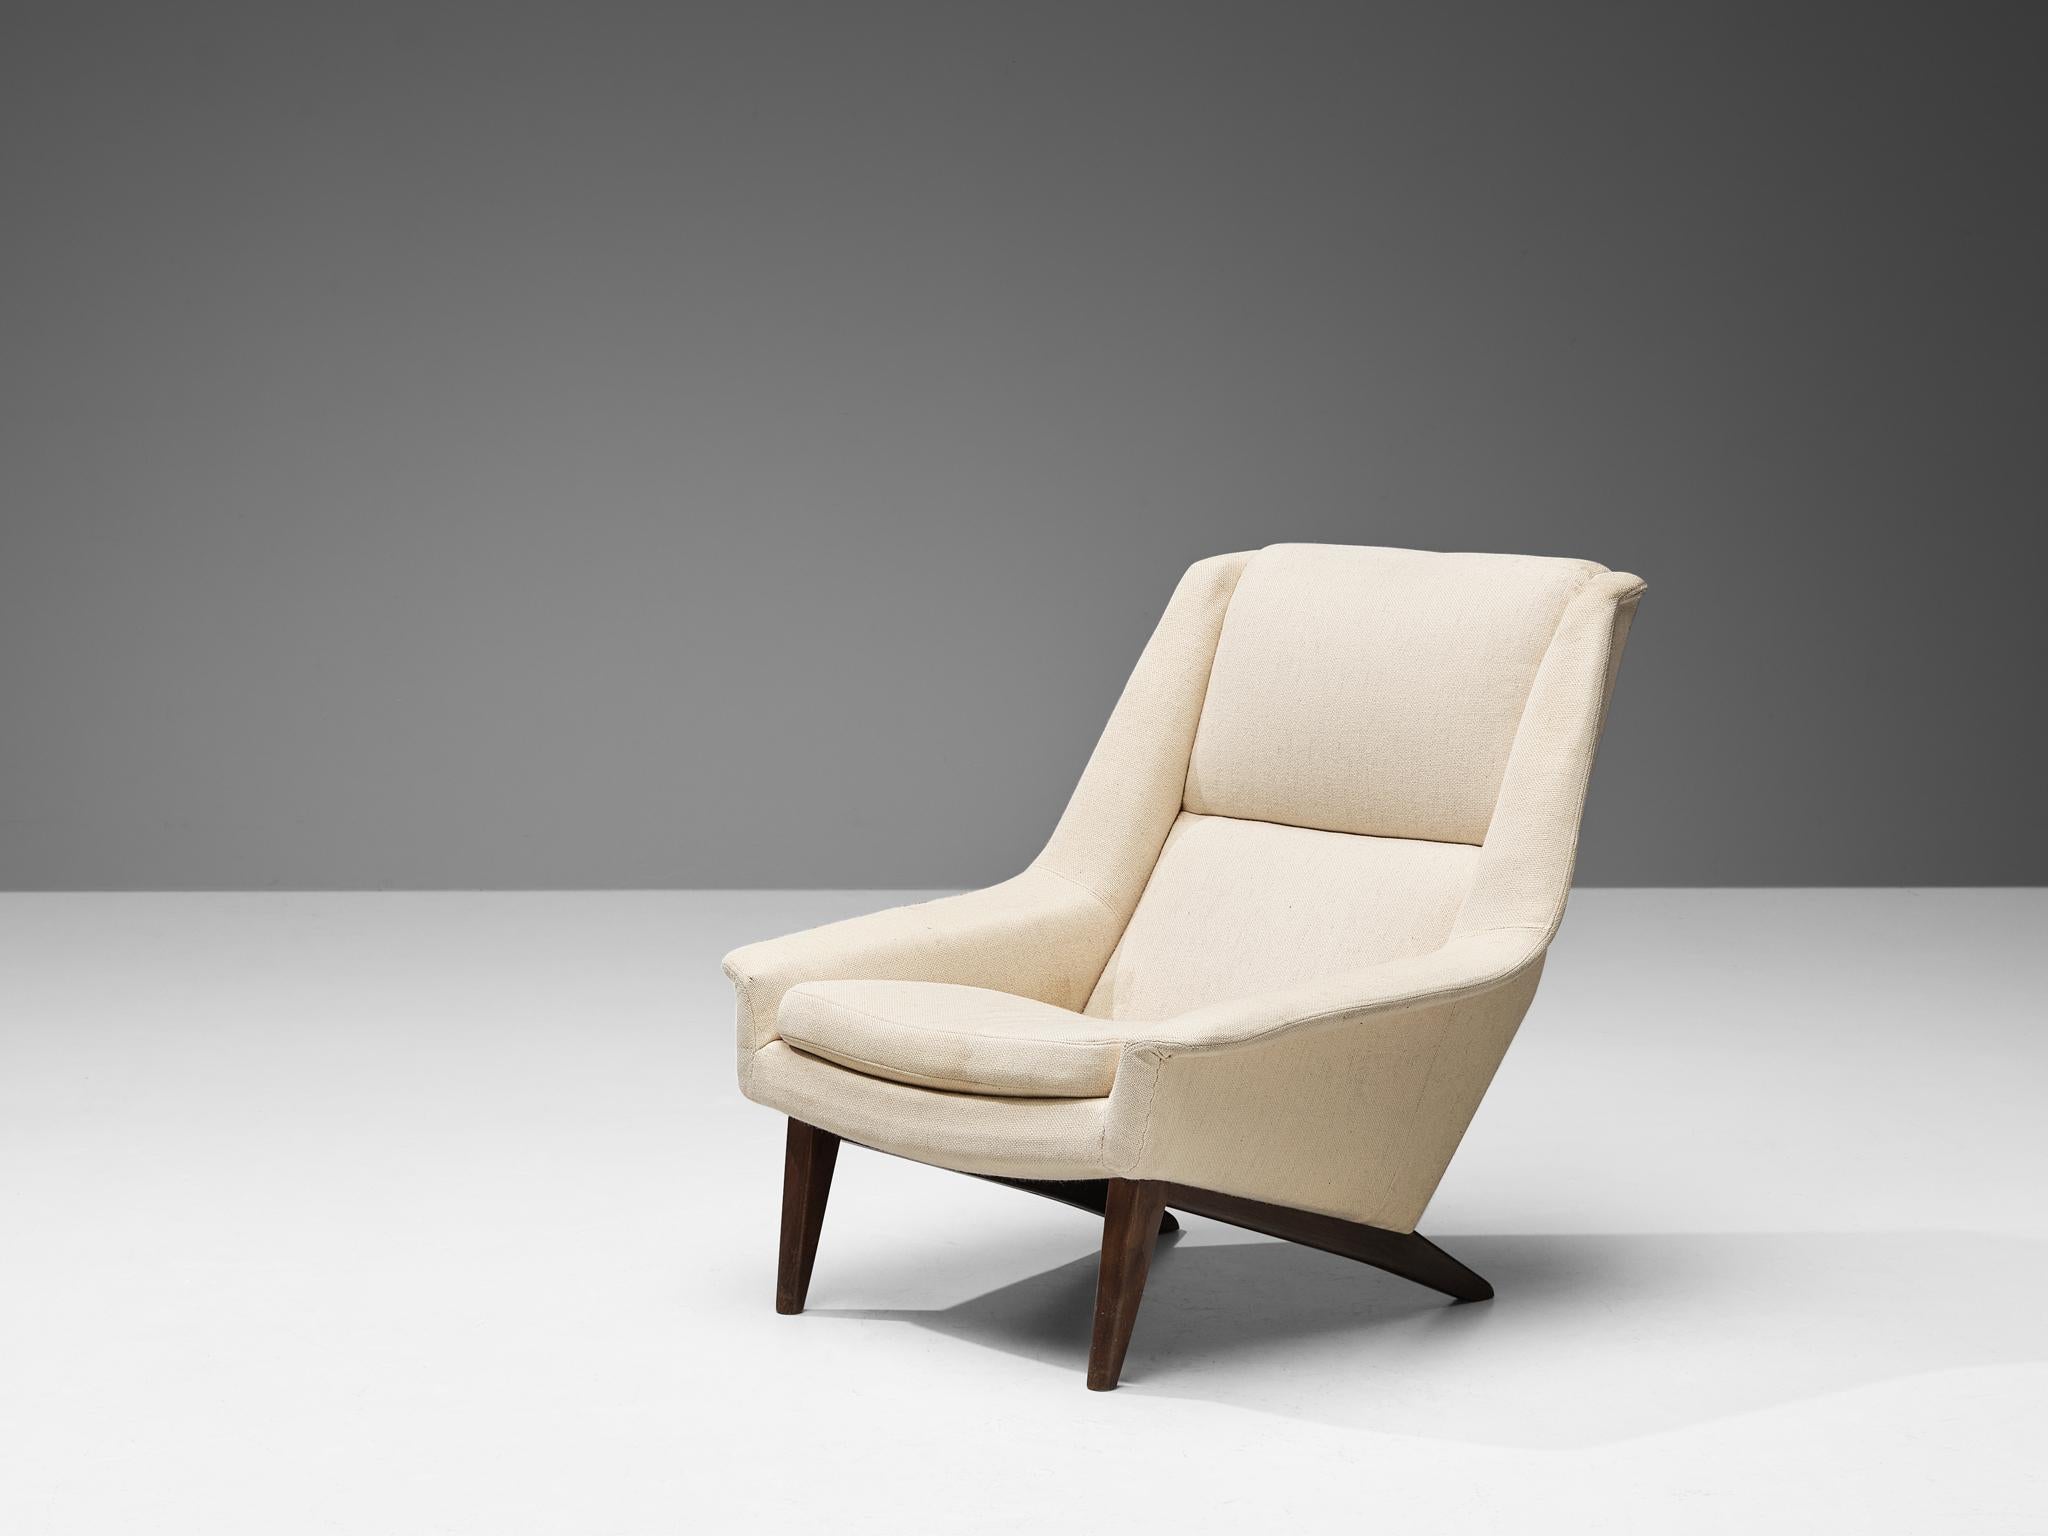 Folke Ohlsson pour Fritz Hansen, chaise longue, modèle '4410', tissu, teck, Danemark, design en 1957

Fauteuil de Folke Ohlsson fabriqué au Danemark dans les années 1950. Cette chaise longue de haute qualité se caractérise par un design élégant et